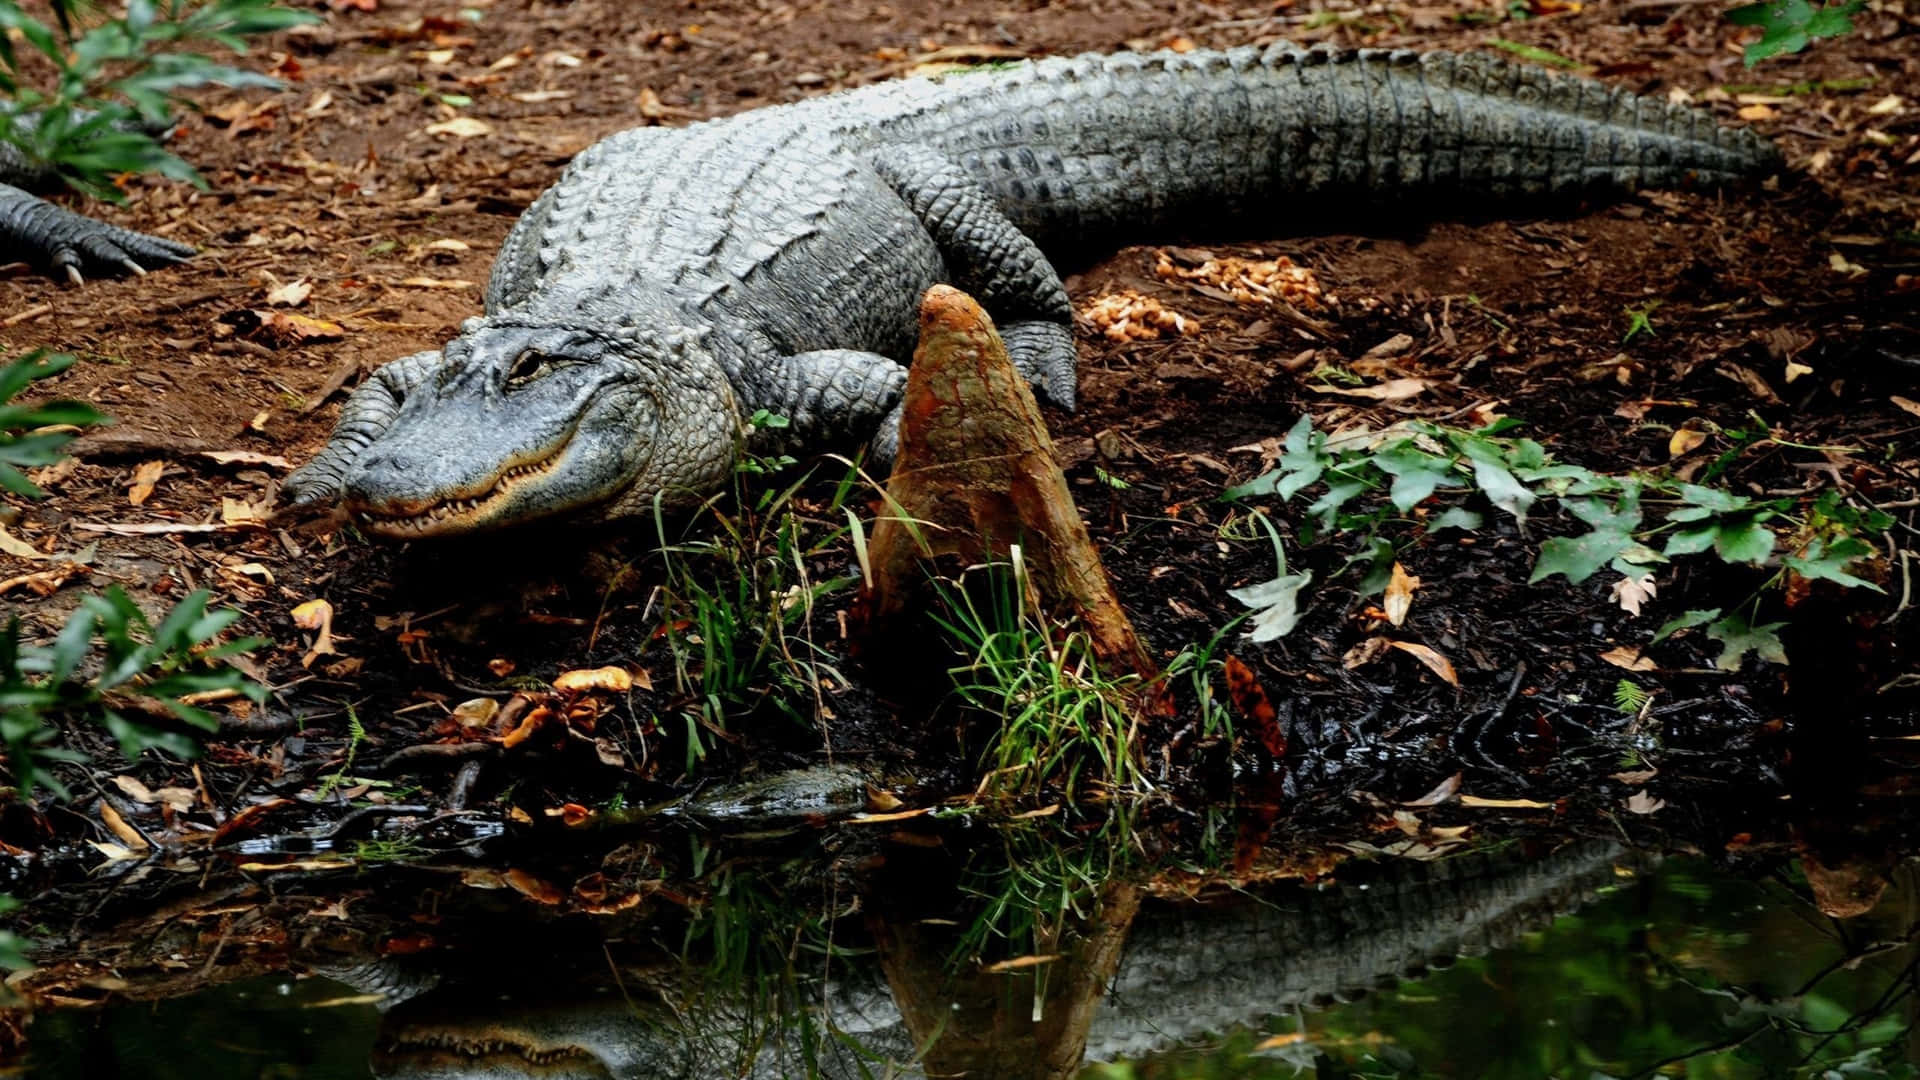 Enlömsk Alligator Lurar I Vattnet.